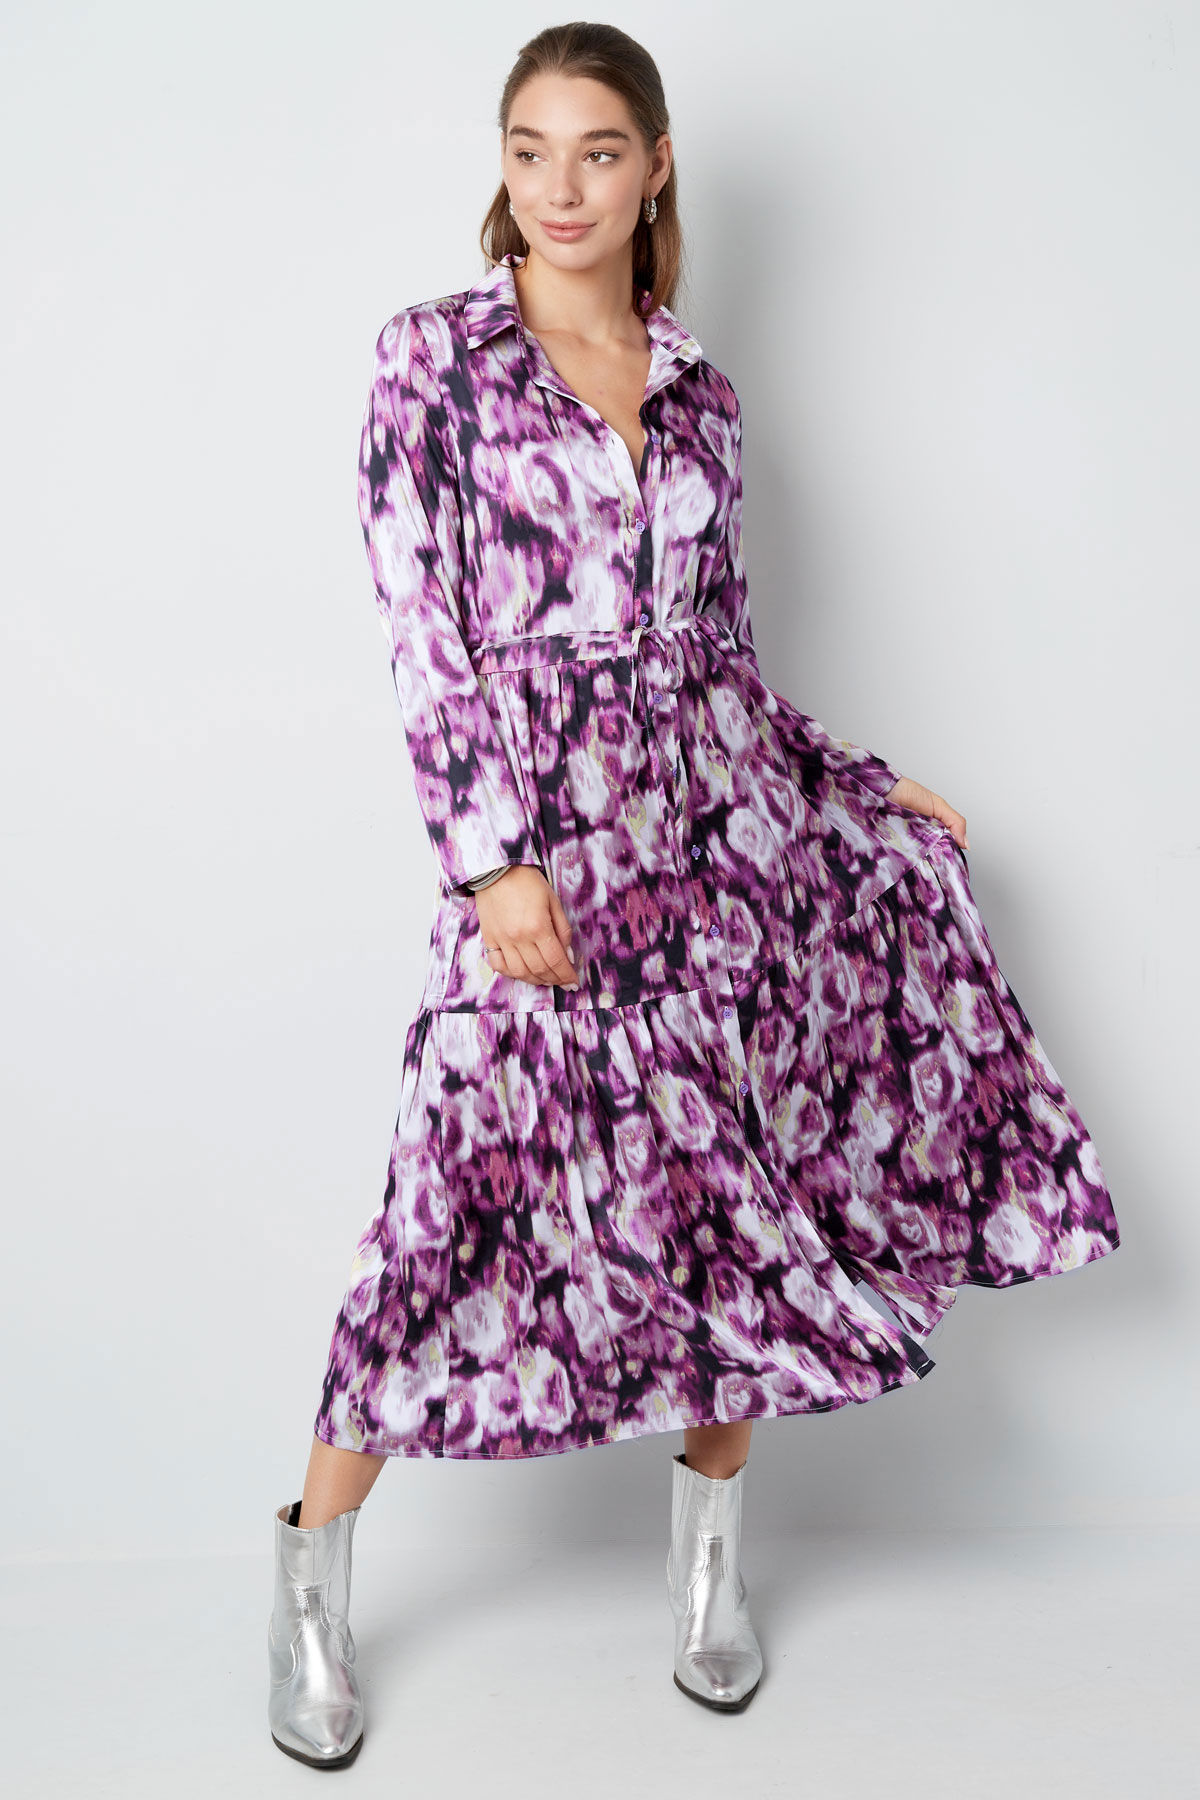 Maxi dress floral print purple Picture6